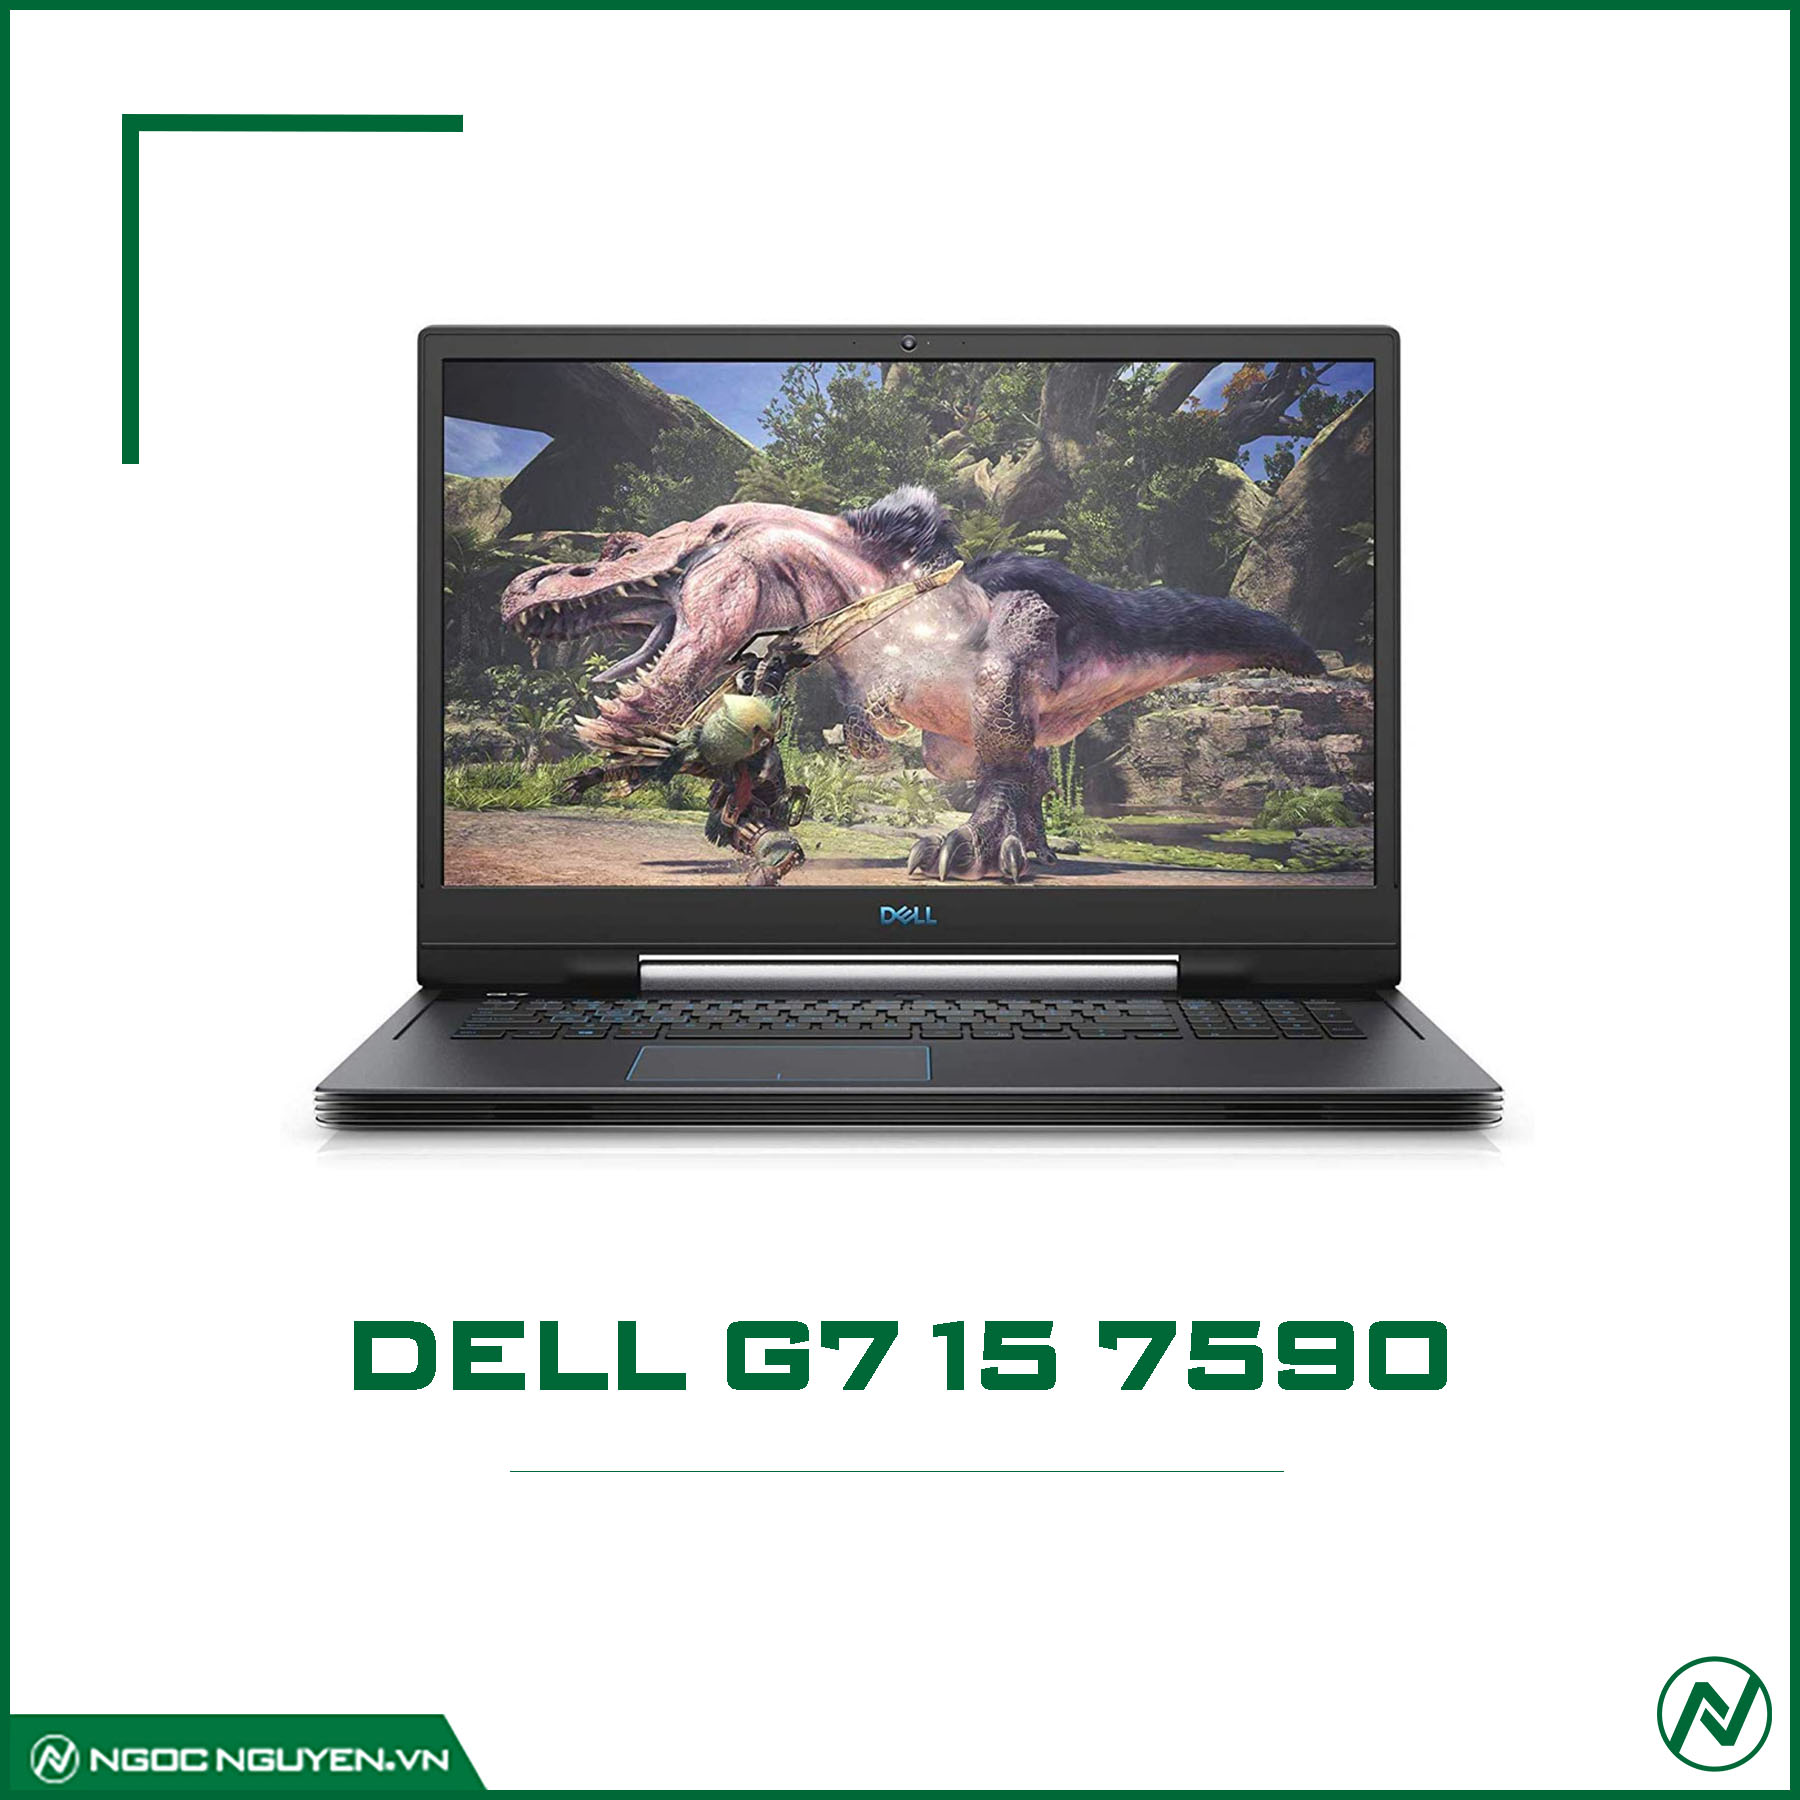 Dell G7 (7590) i7 9750H/ RAM 8GB/ SSD 128GB+HDD 1TB/ GTX 1660ti/ 15.6 INCH FHD